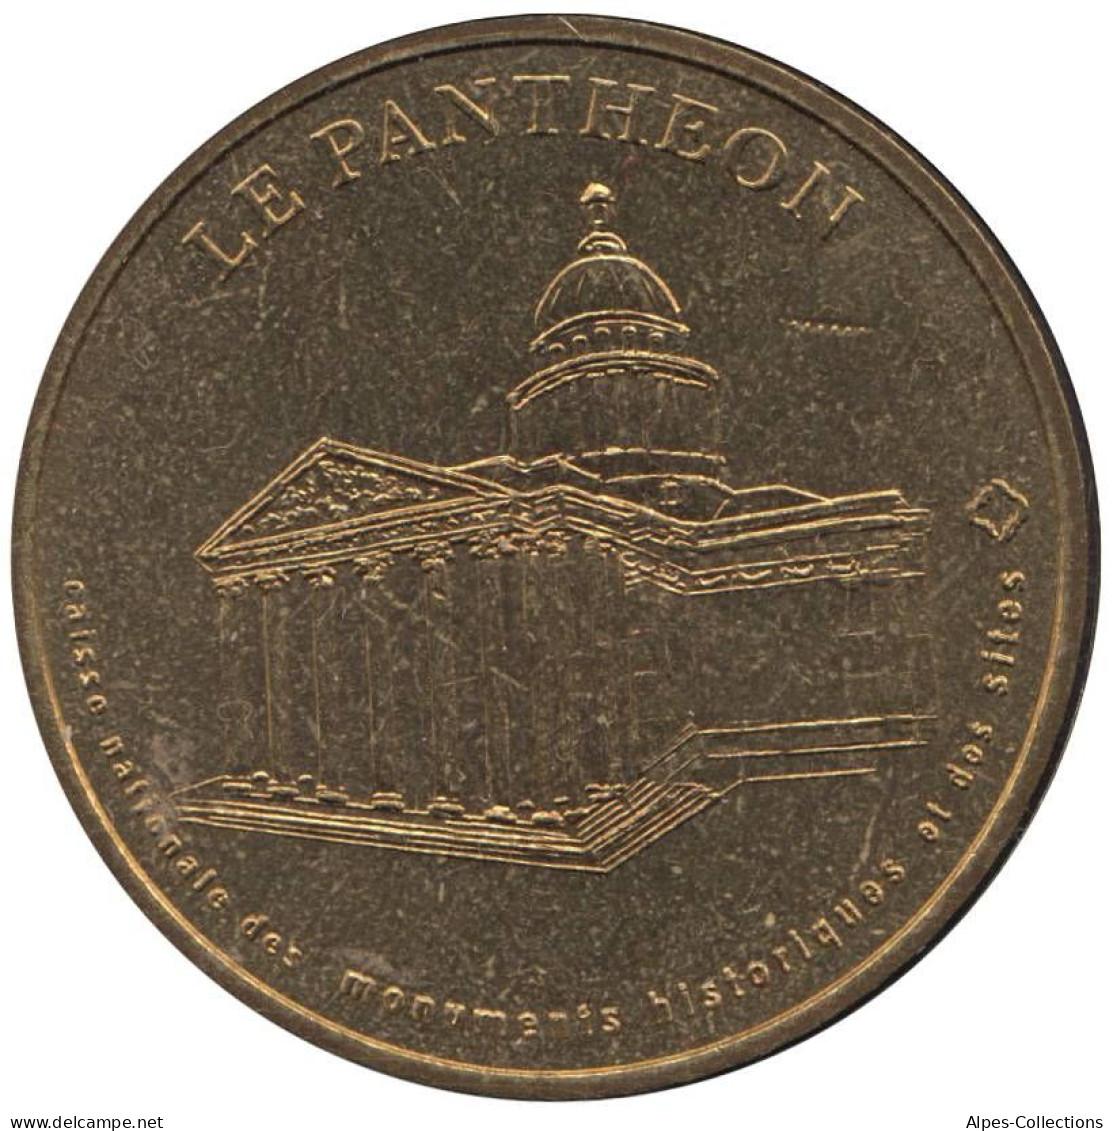 75-0242 - JETON TOURISTIQUE MDP - Le Panthéon - CNMHS - 2004.1 - 2004